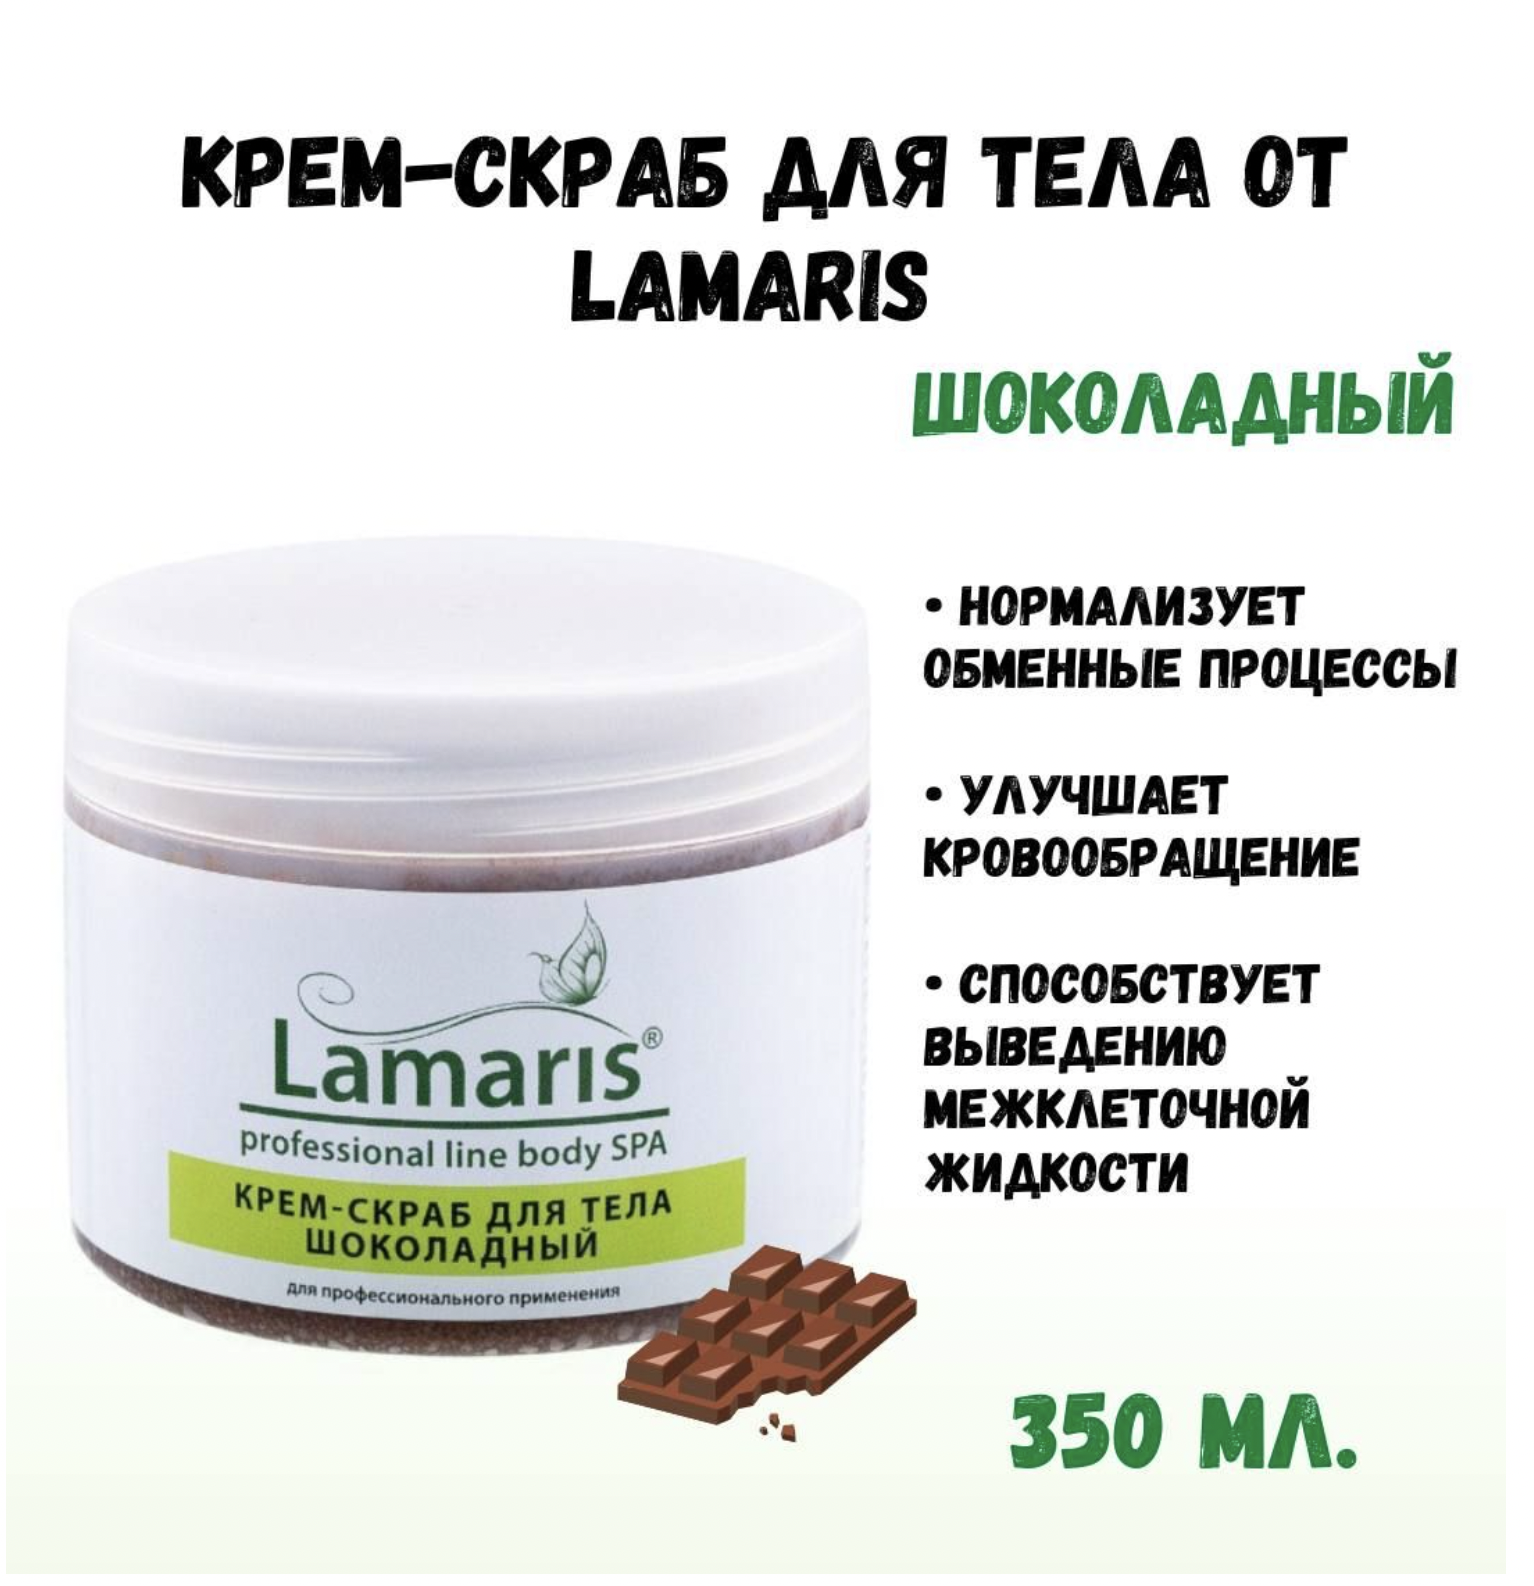 Крем-скраб Lamaris шоколадный 350 г blando cosmetics скраб для тела шоколадный с маслами 300 0